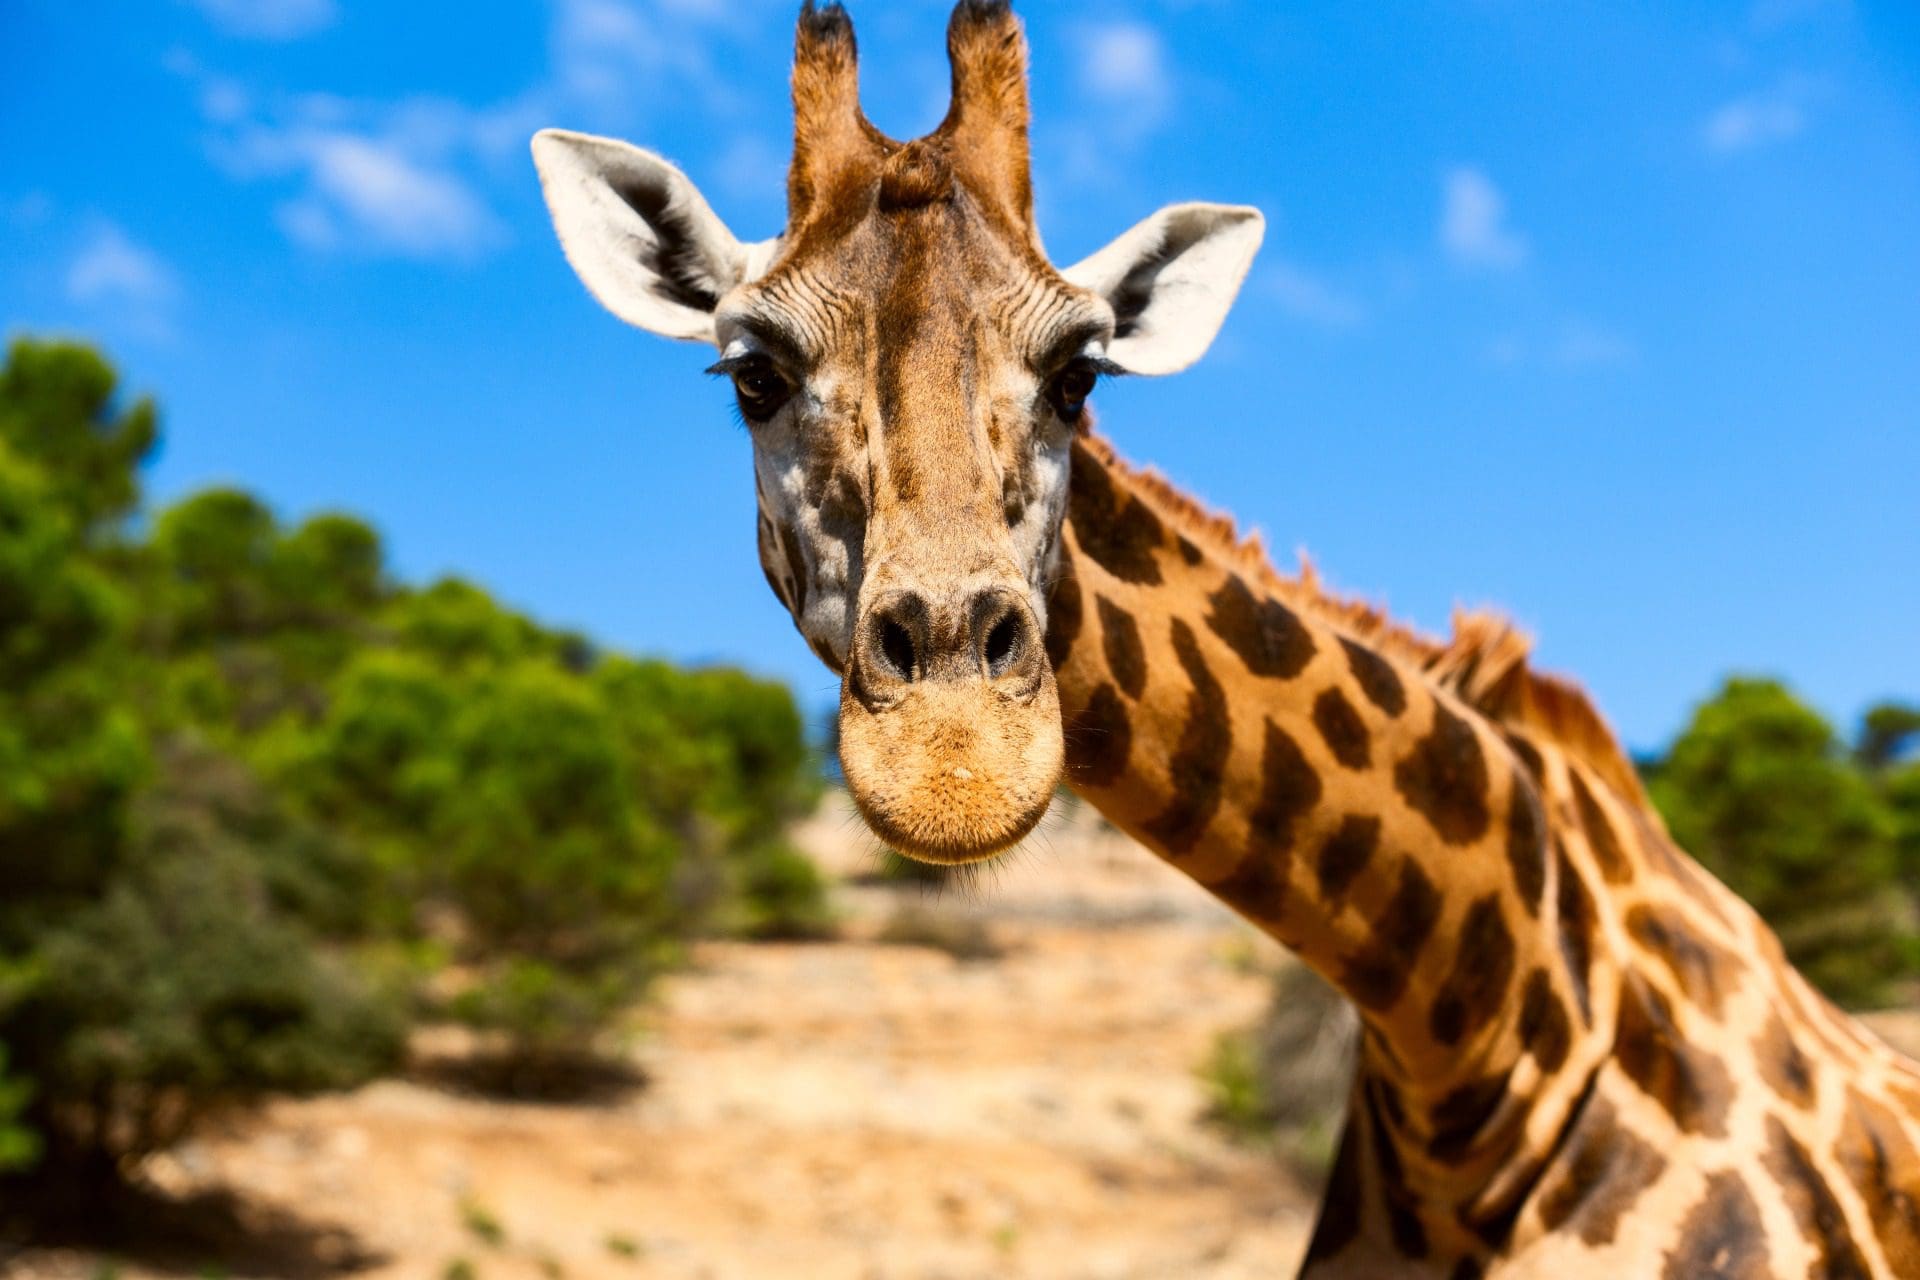 Girafa mata bebé na África do Sul